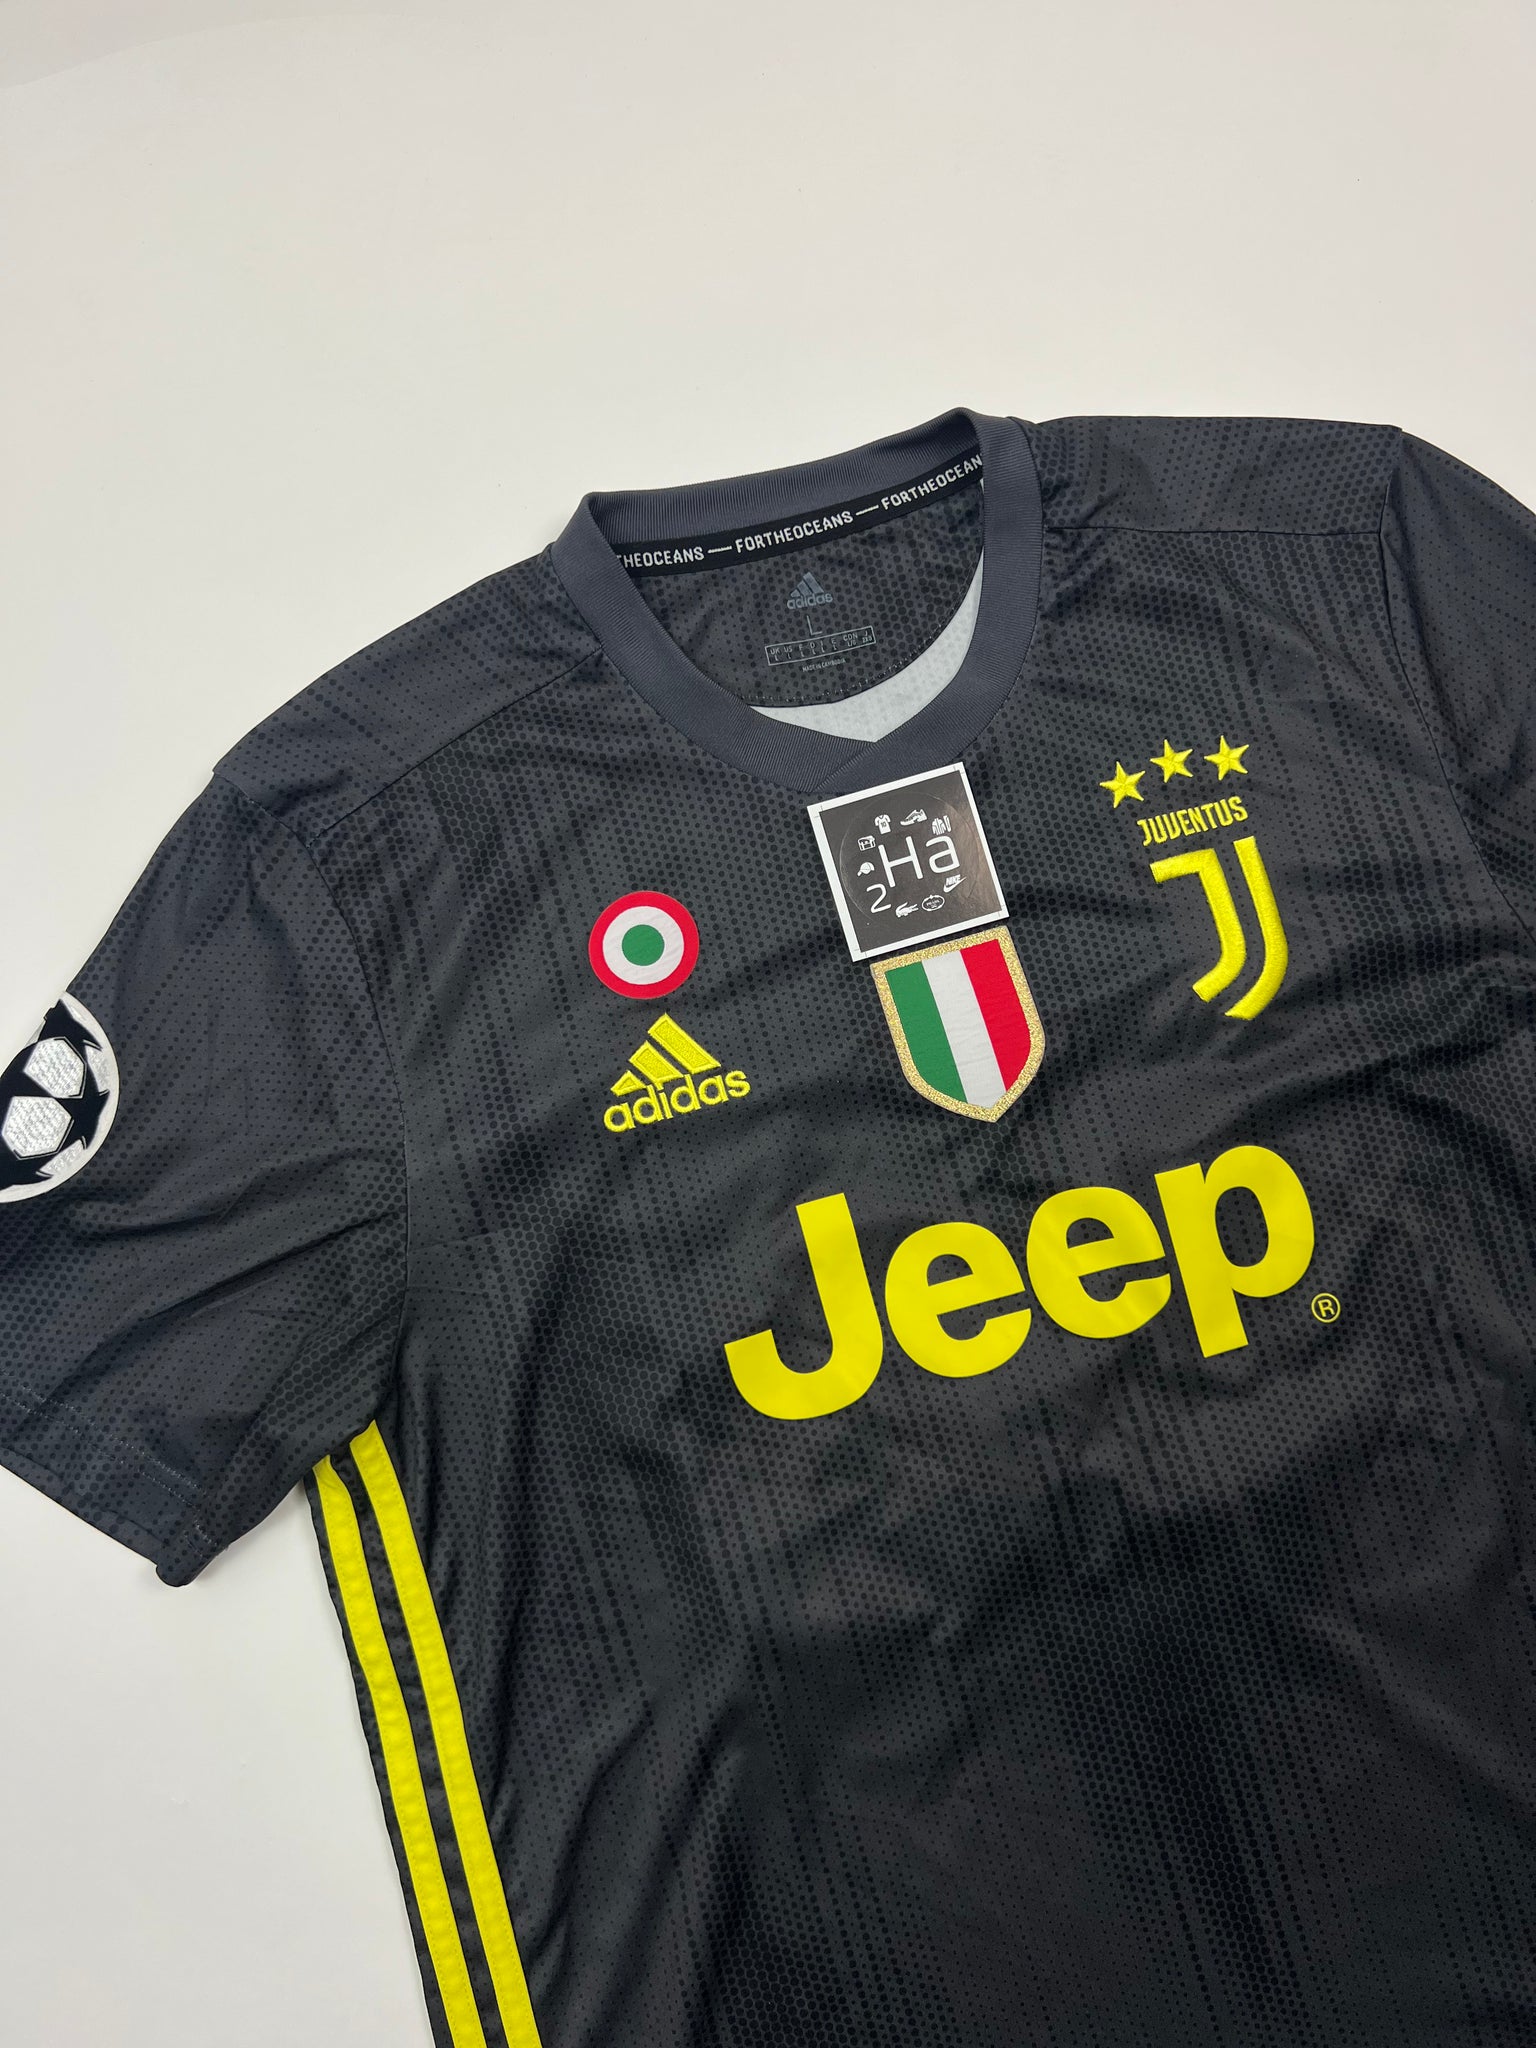 Adidas Juventus Jersey (L)